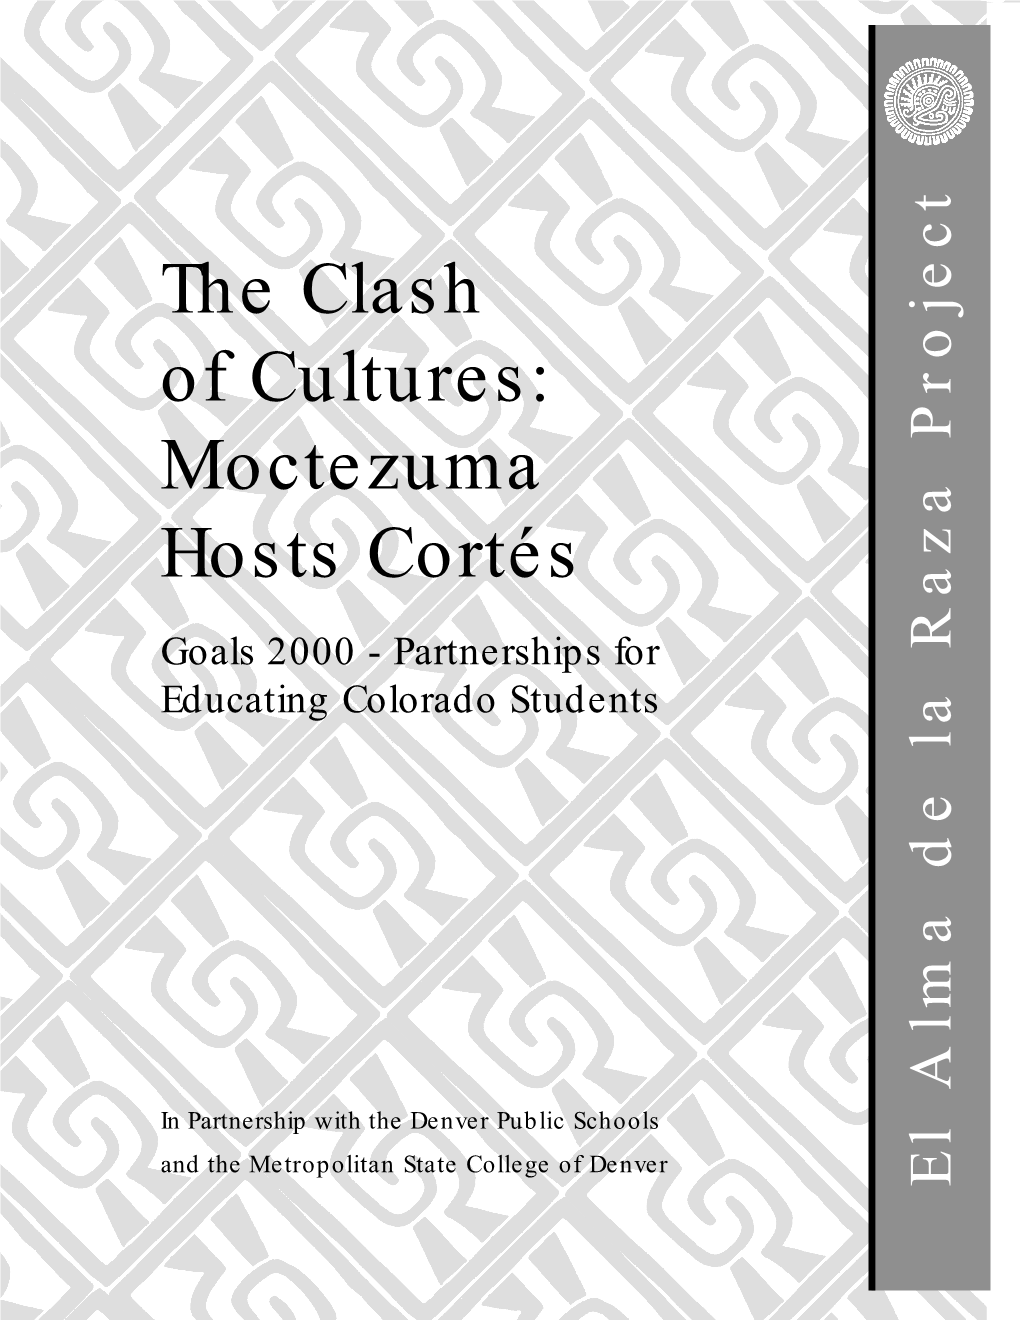 The Clash of Cultures: Moctezuma Hosts Cortés by Sallie Baker